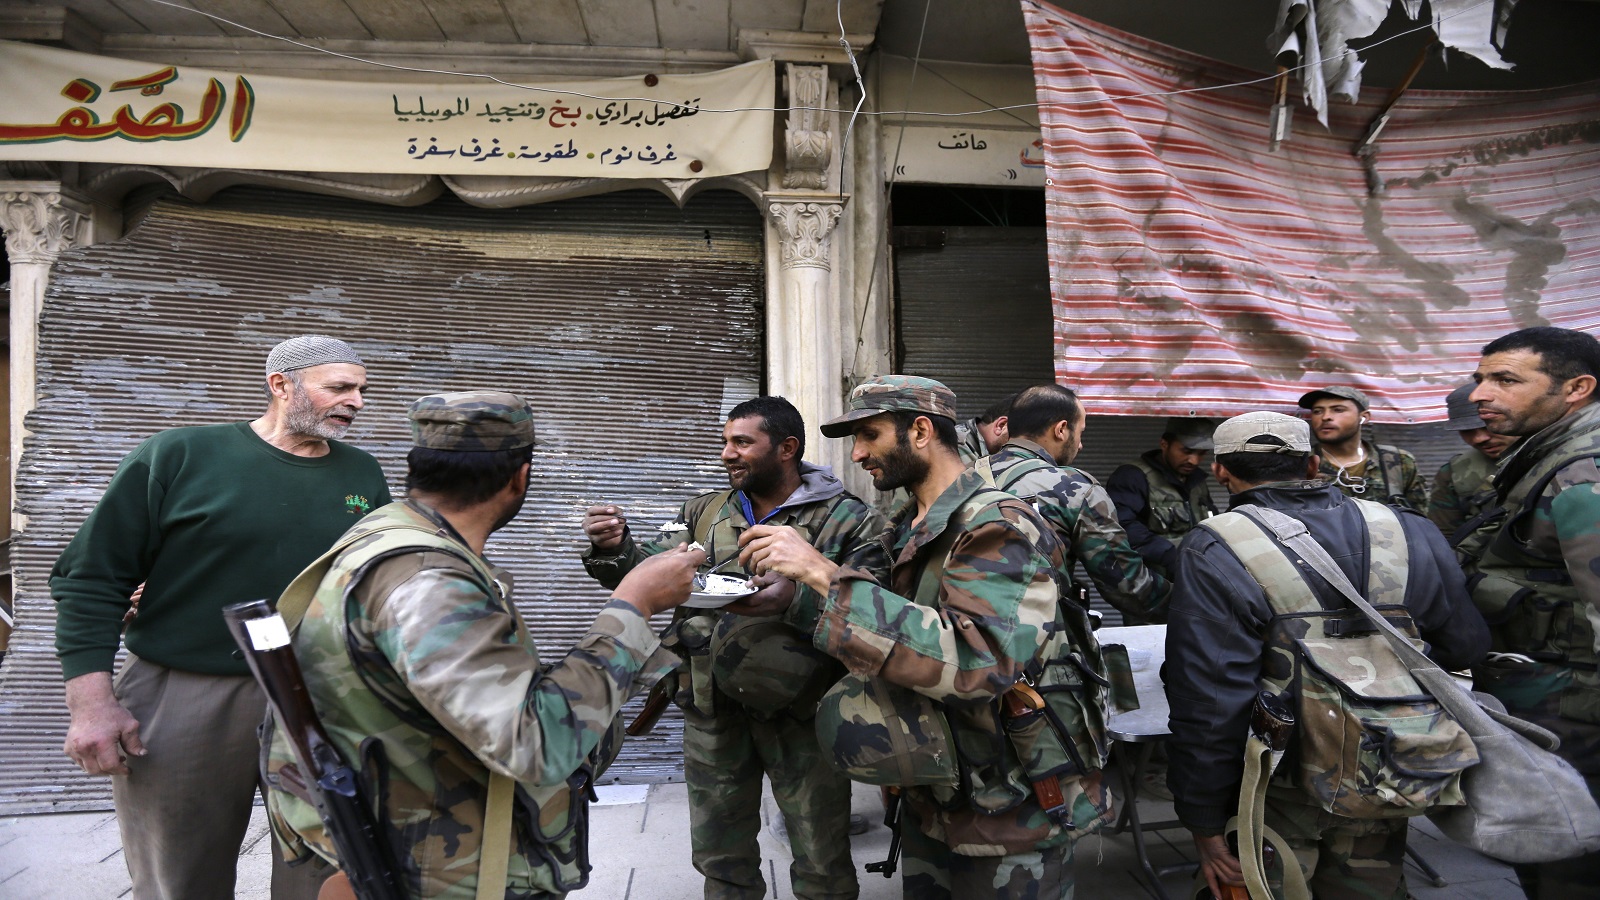 الانتخابات والدولار..يرفعان وتيرة الاعتقالات في دمشق وريفها